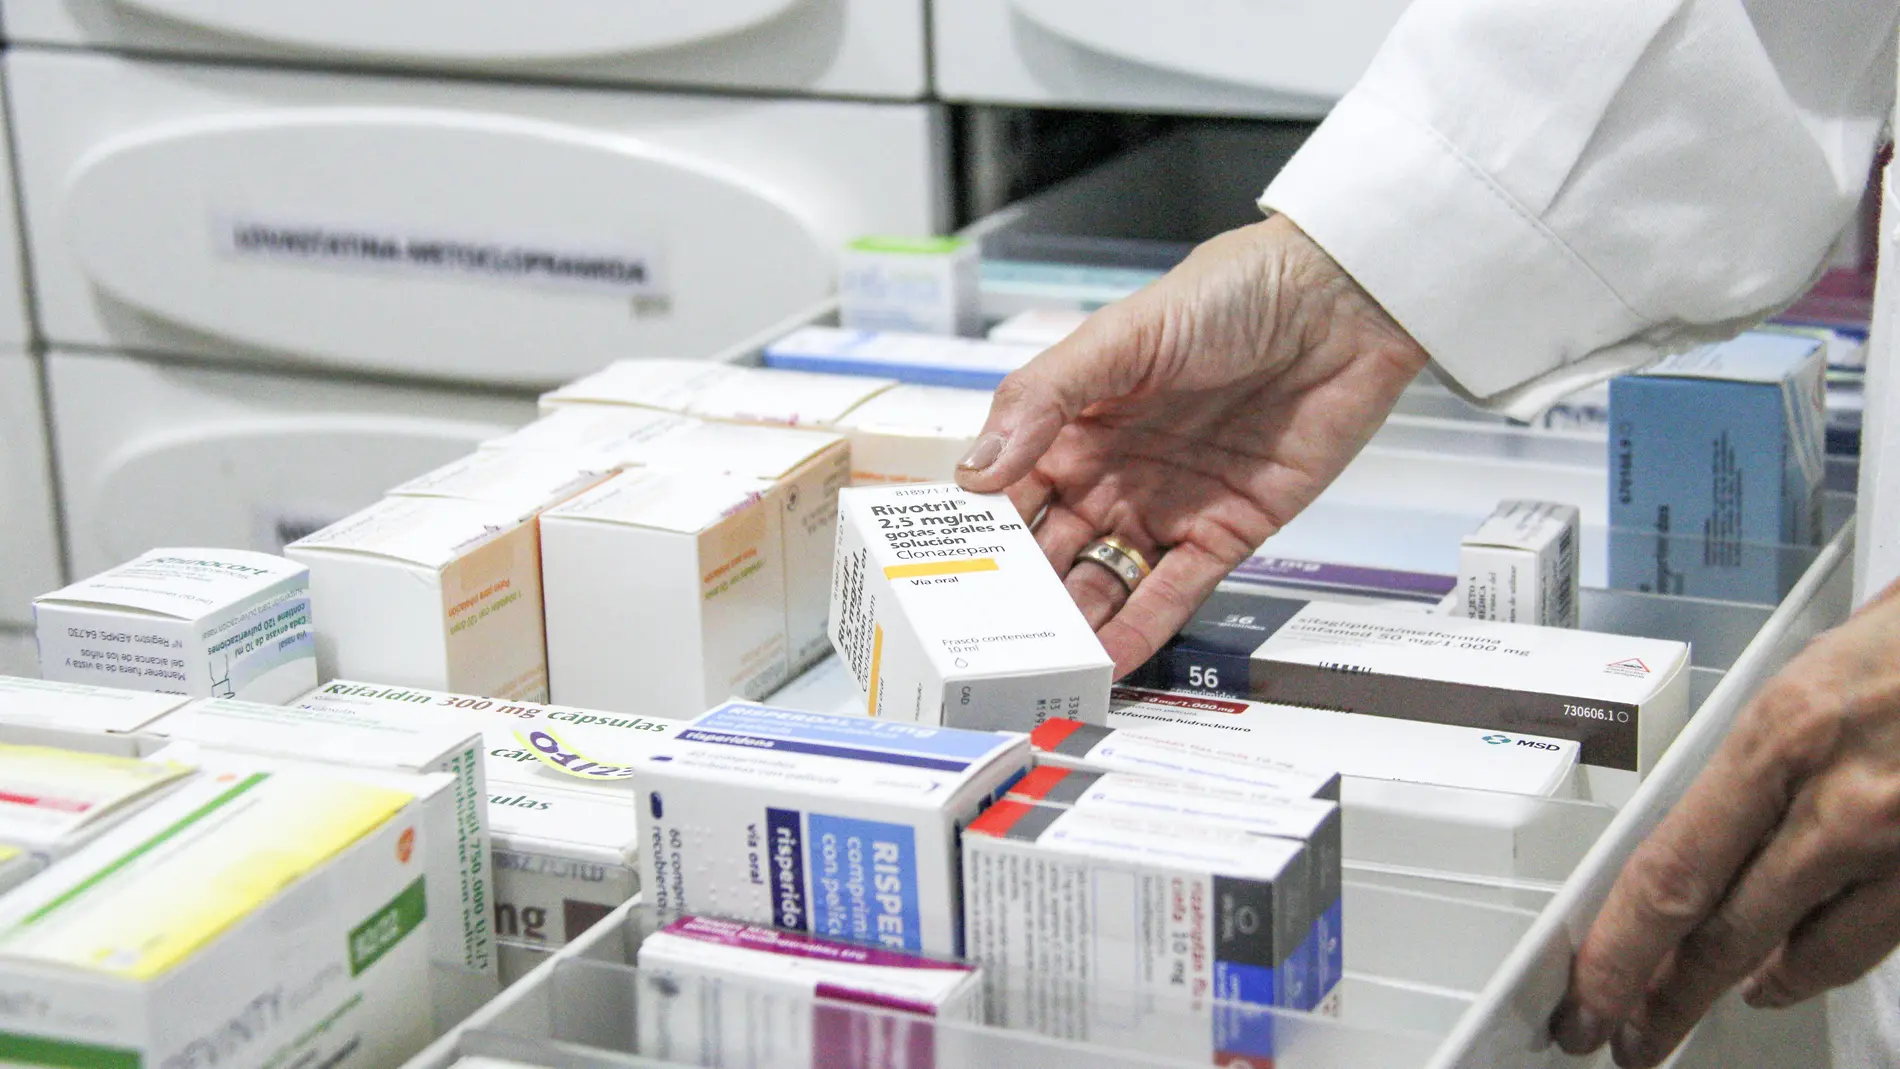 La escasez afecta ya a más de 680 presentaciones de medicamentos